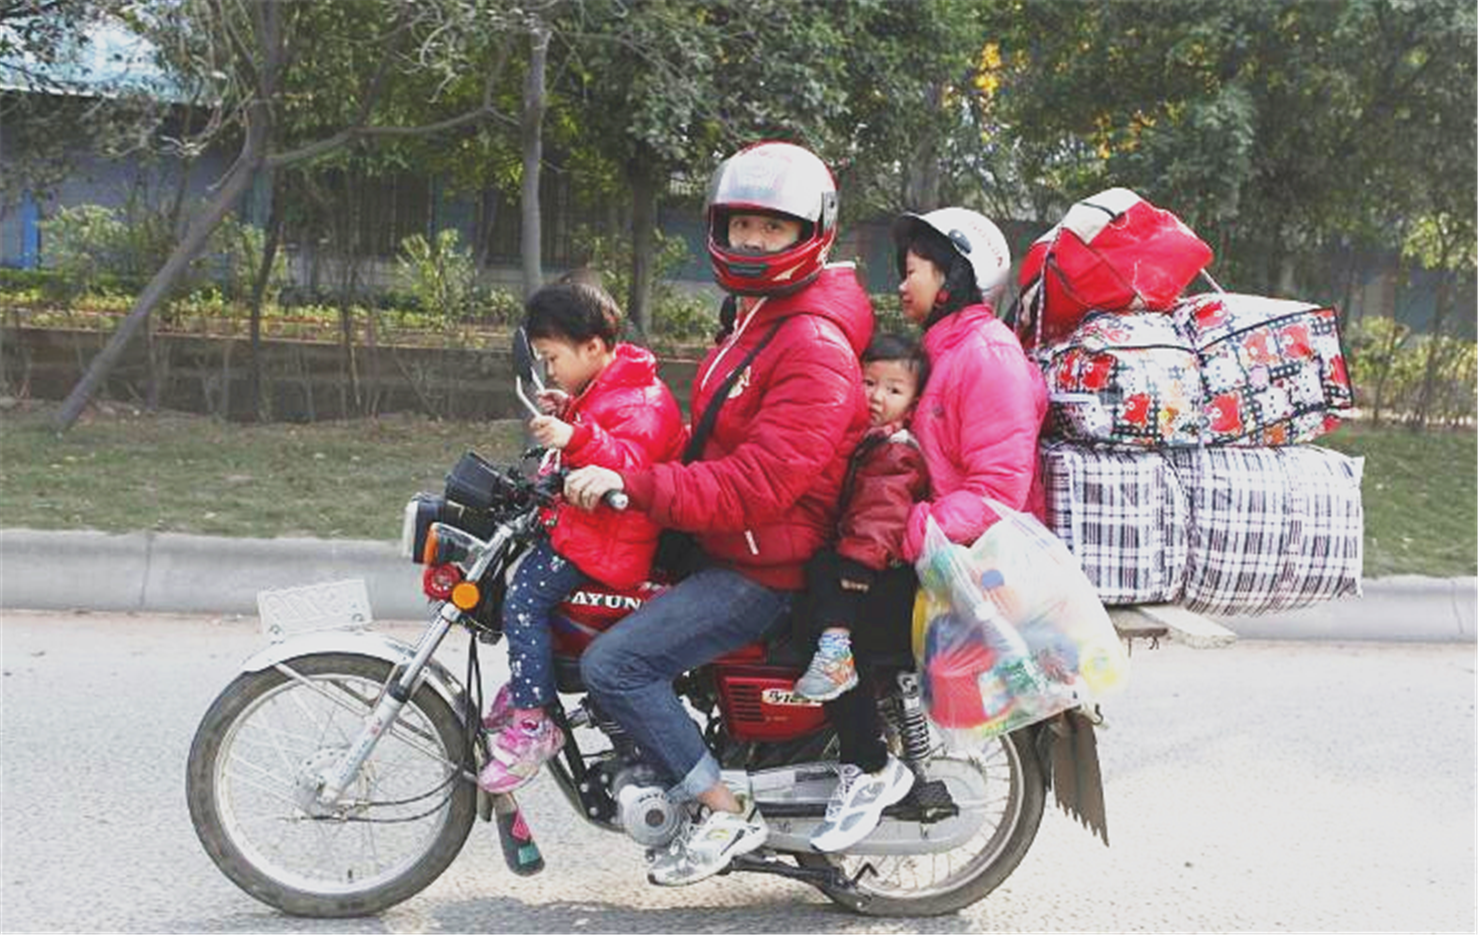 10张图看摩托车返乡,农民工兄弟骑摩托车过年回家路!